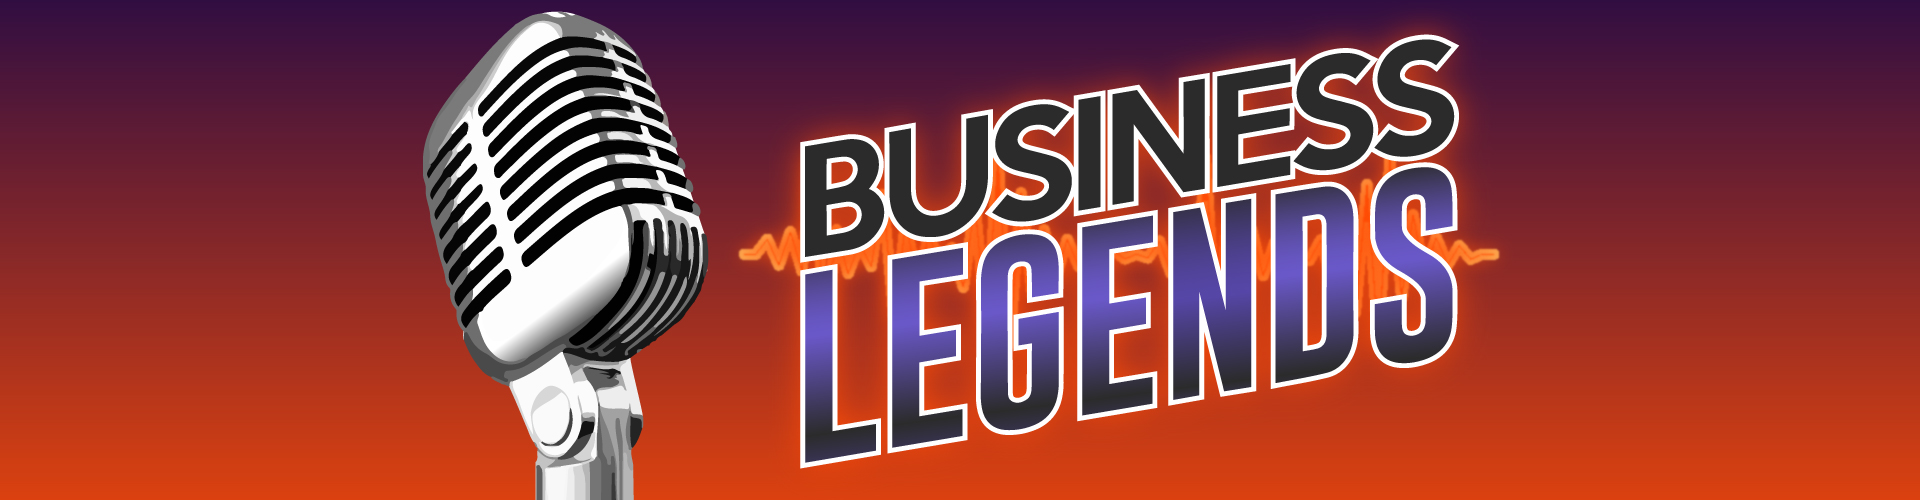 Business Legends Podcast Widescreen